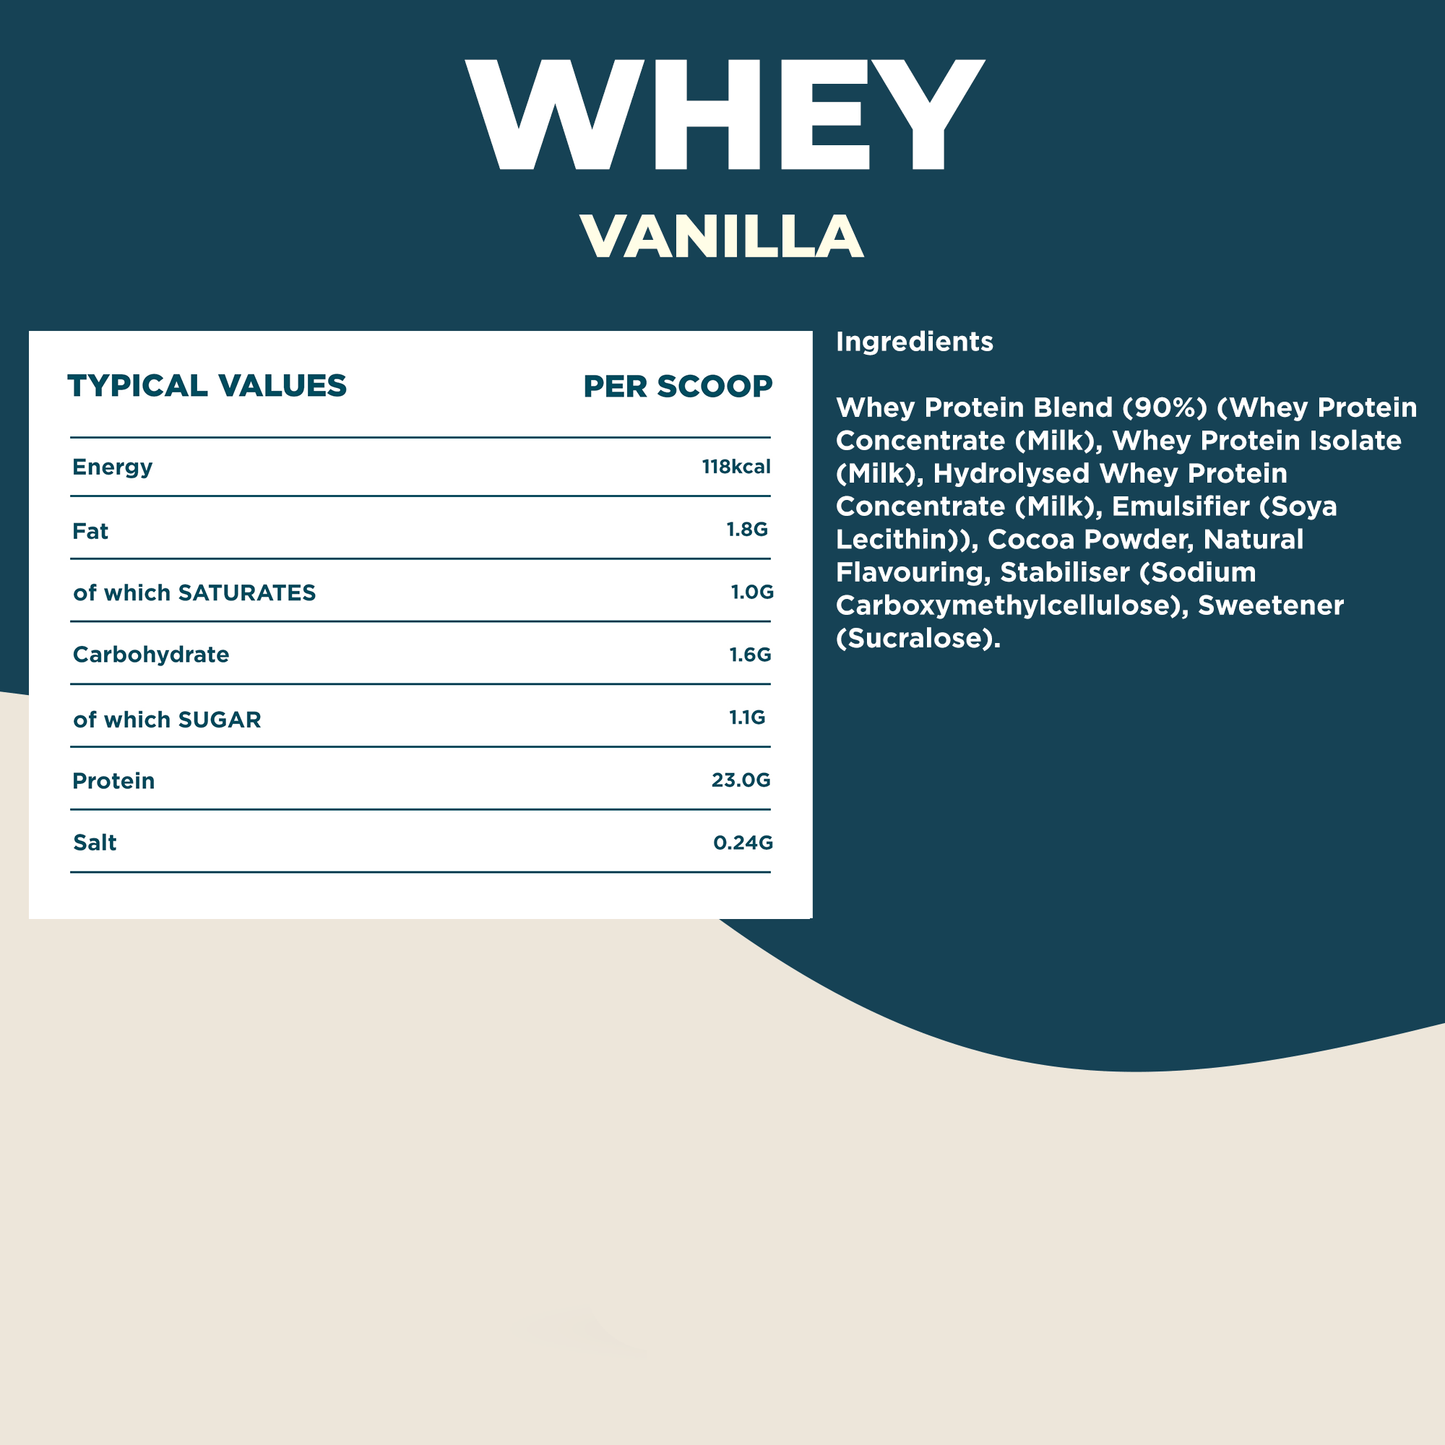 Whey Protein Vanilla 4.5kg